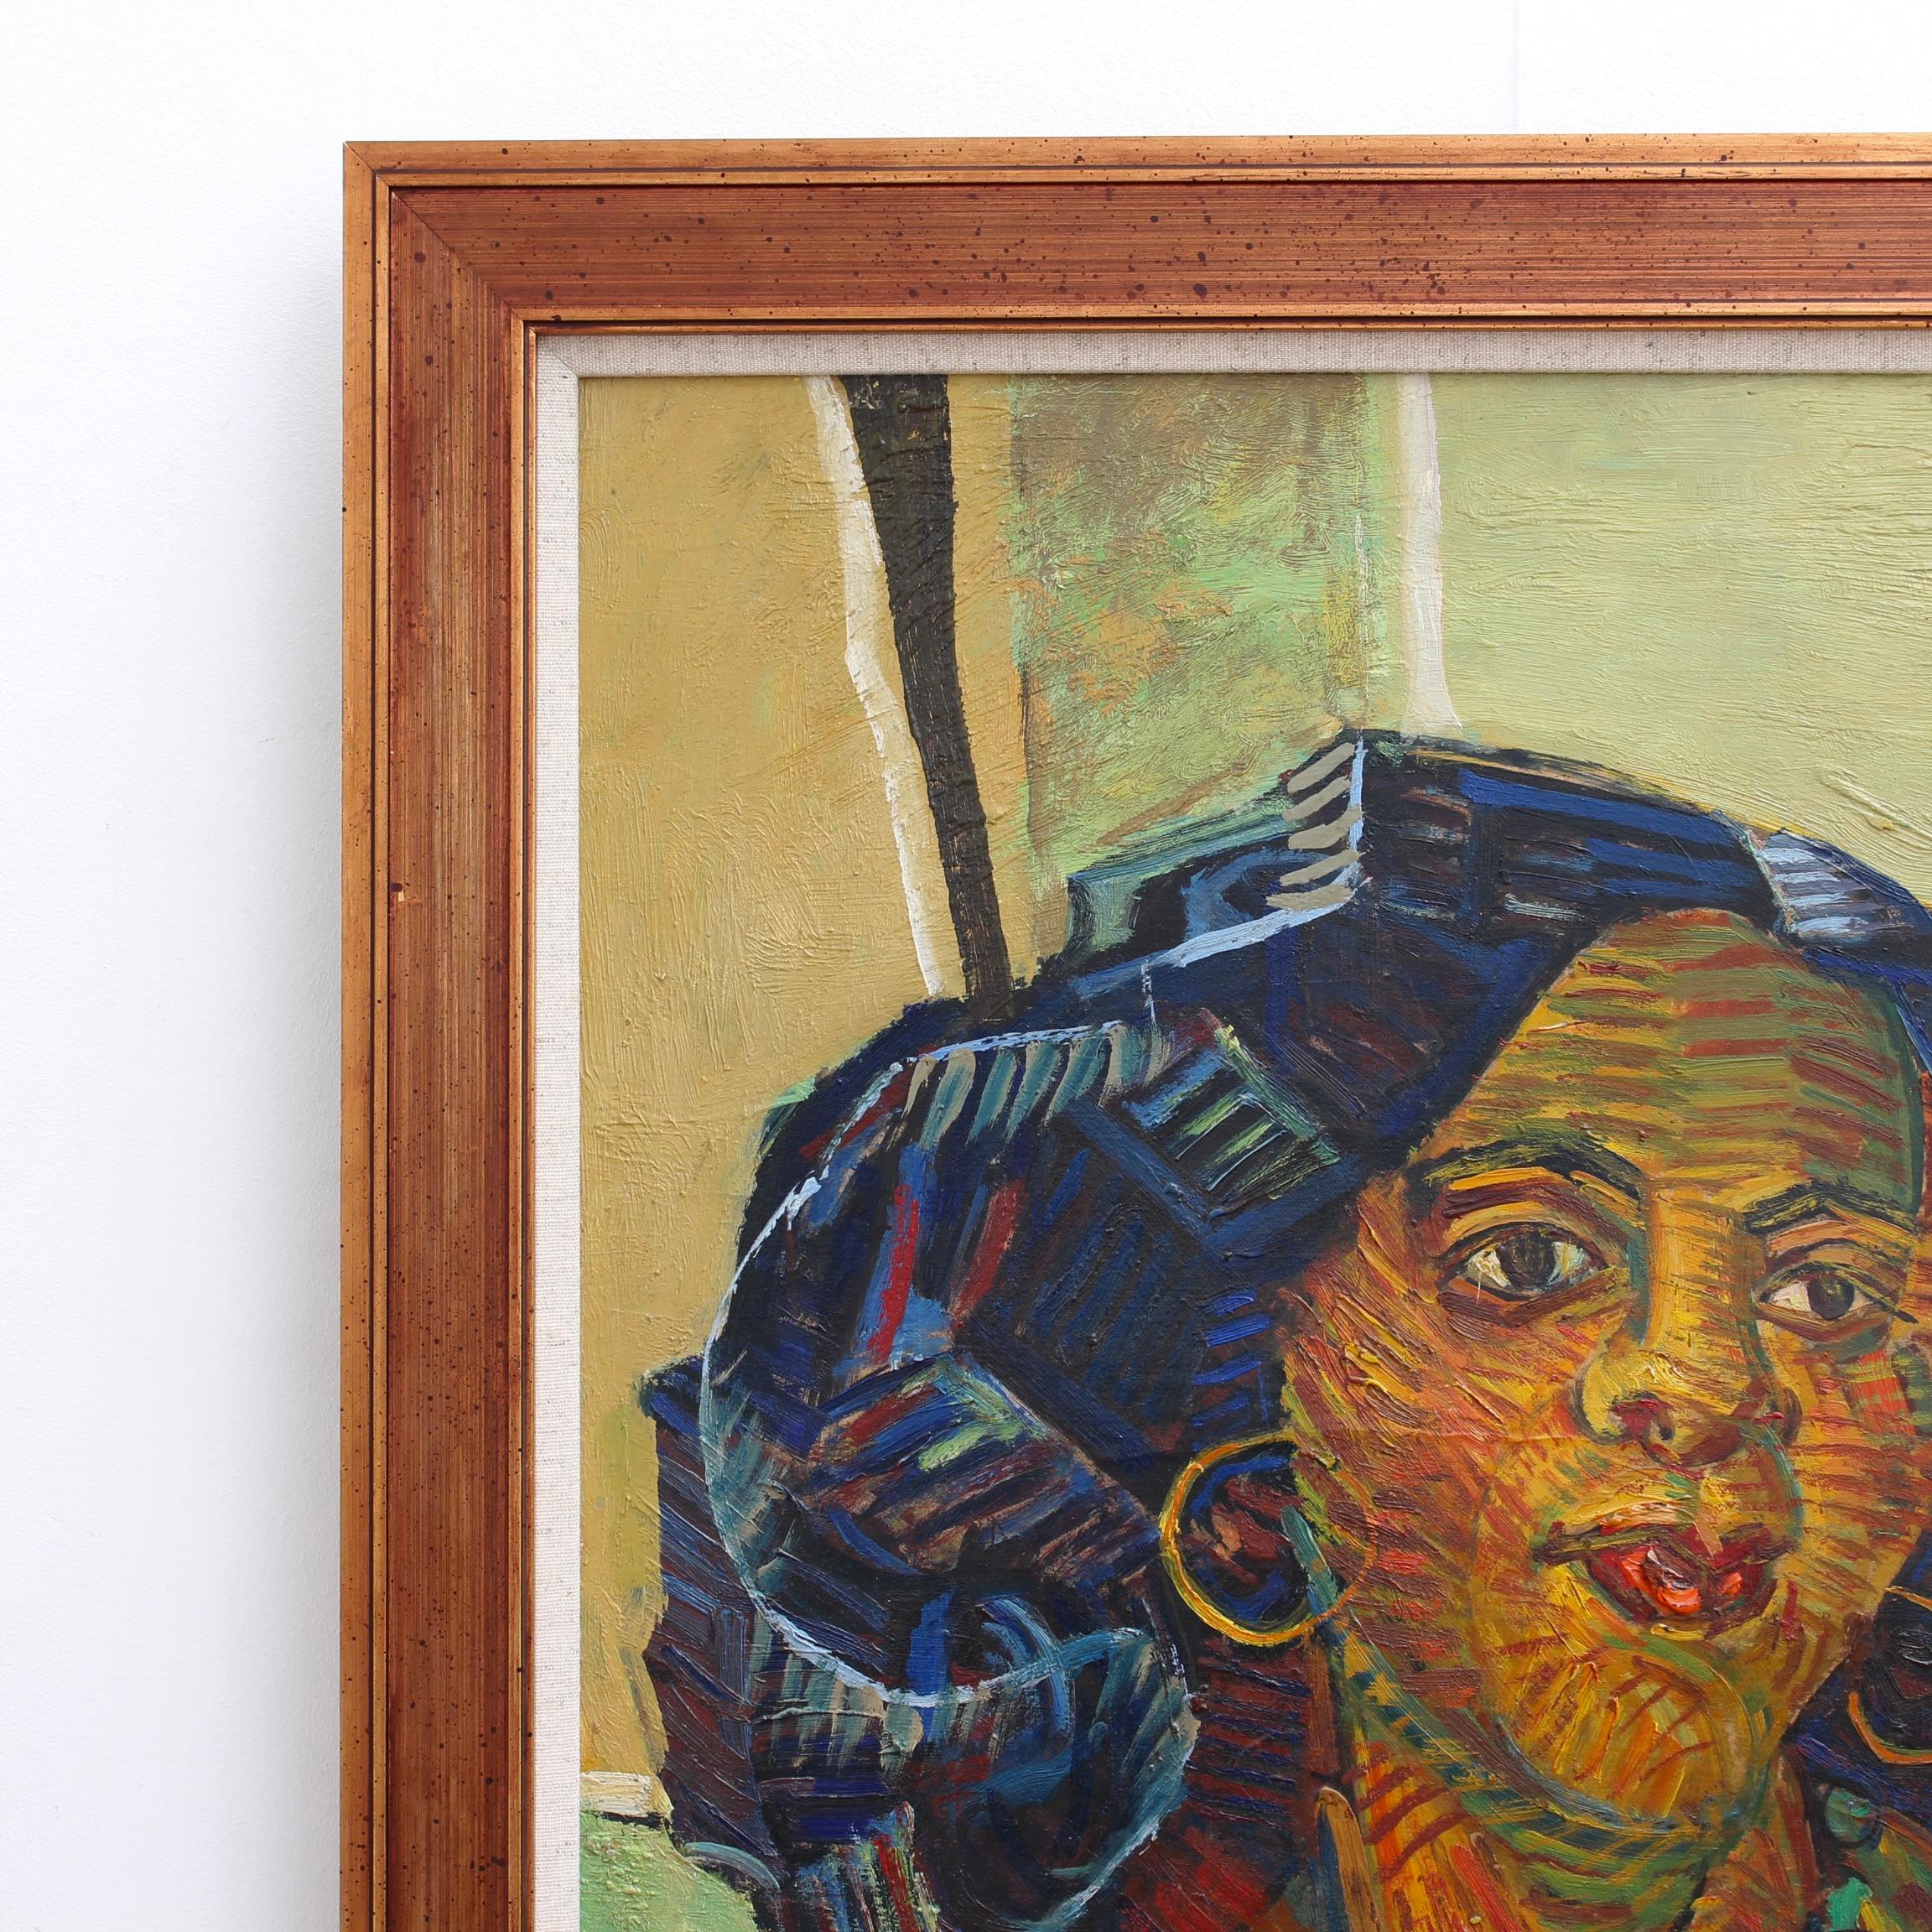 Femme aux boucles d'oreilles, huile sur toile, par Louis Latapie (vers les années 1930). Remplie de couleurs, cette œuvre extraordinairement séduisante de l'artiste français Latapie séduit par son allure chaleureuse. Latapie est connu pour ses